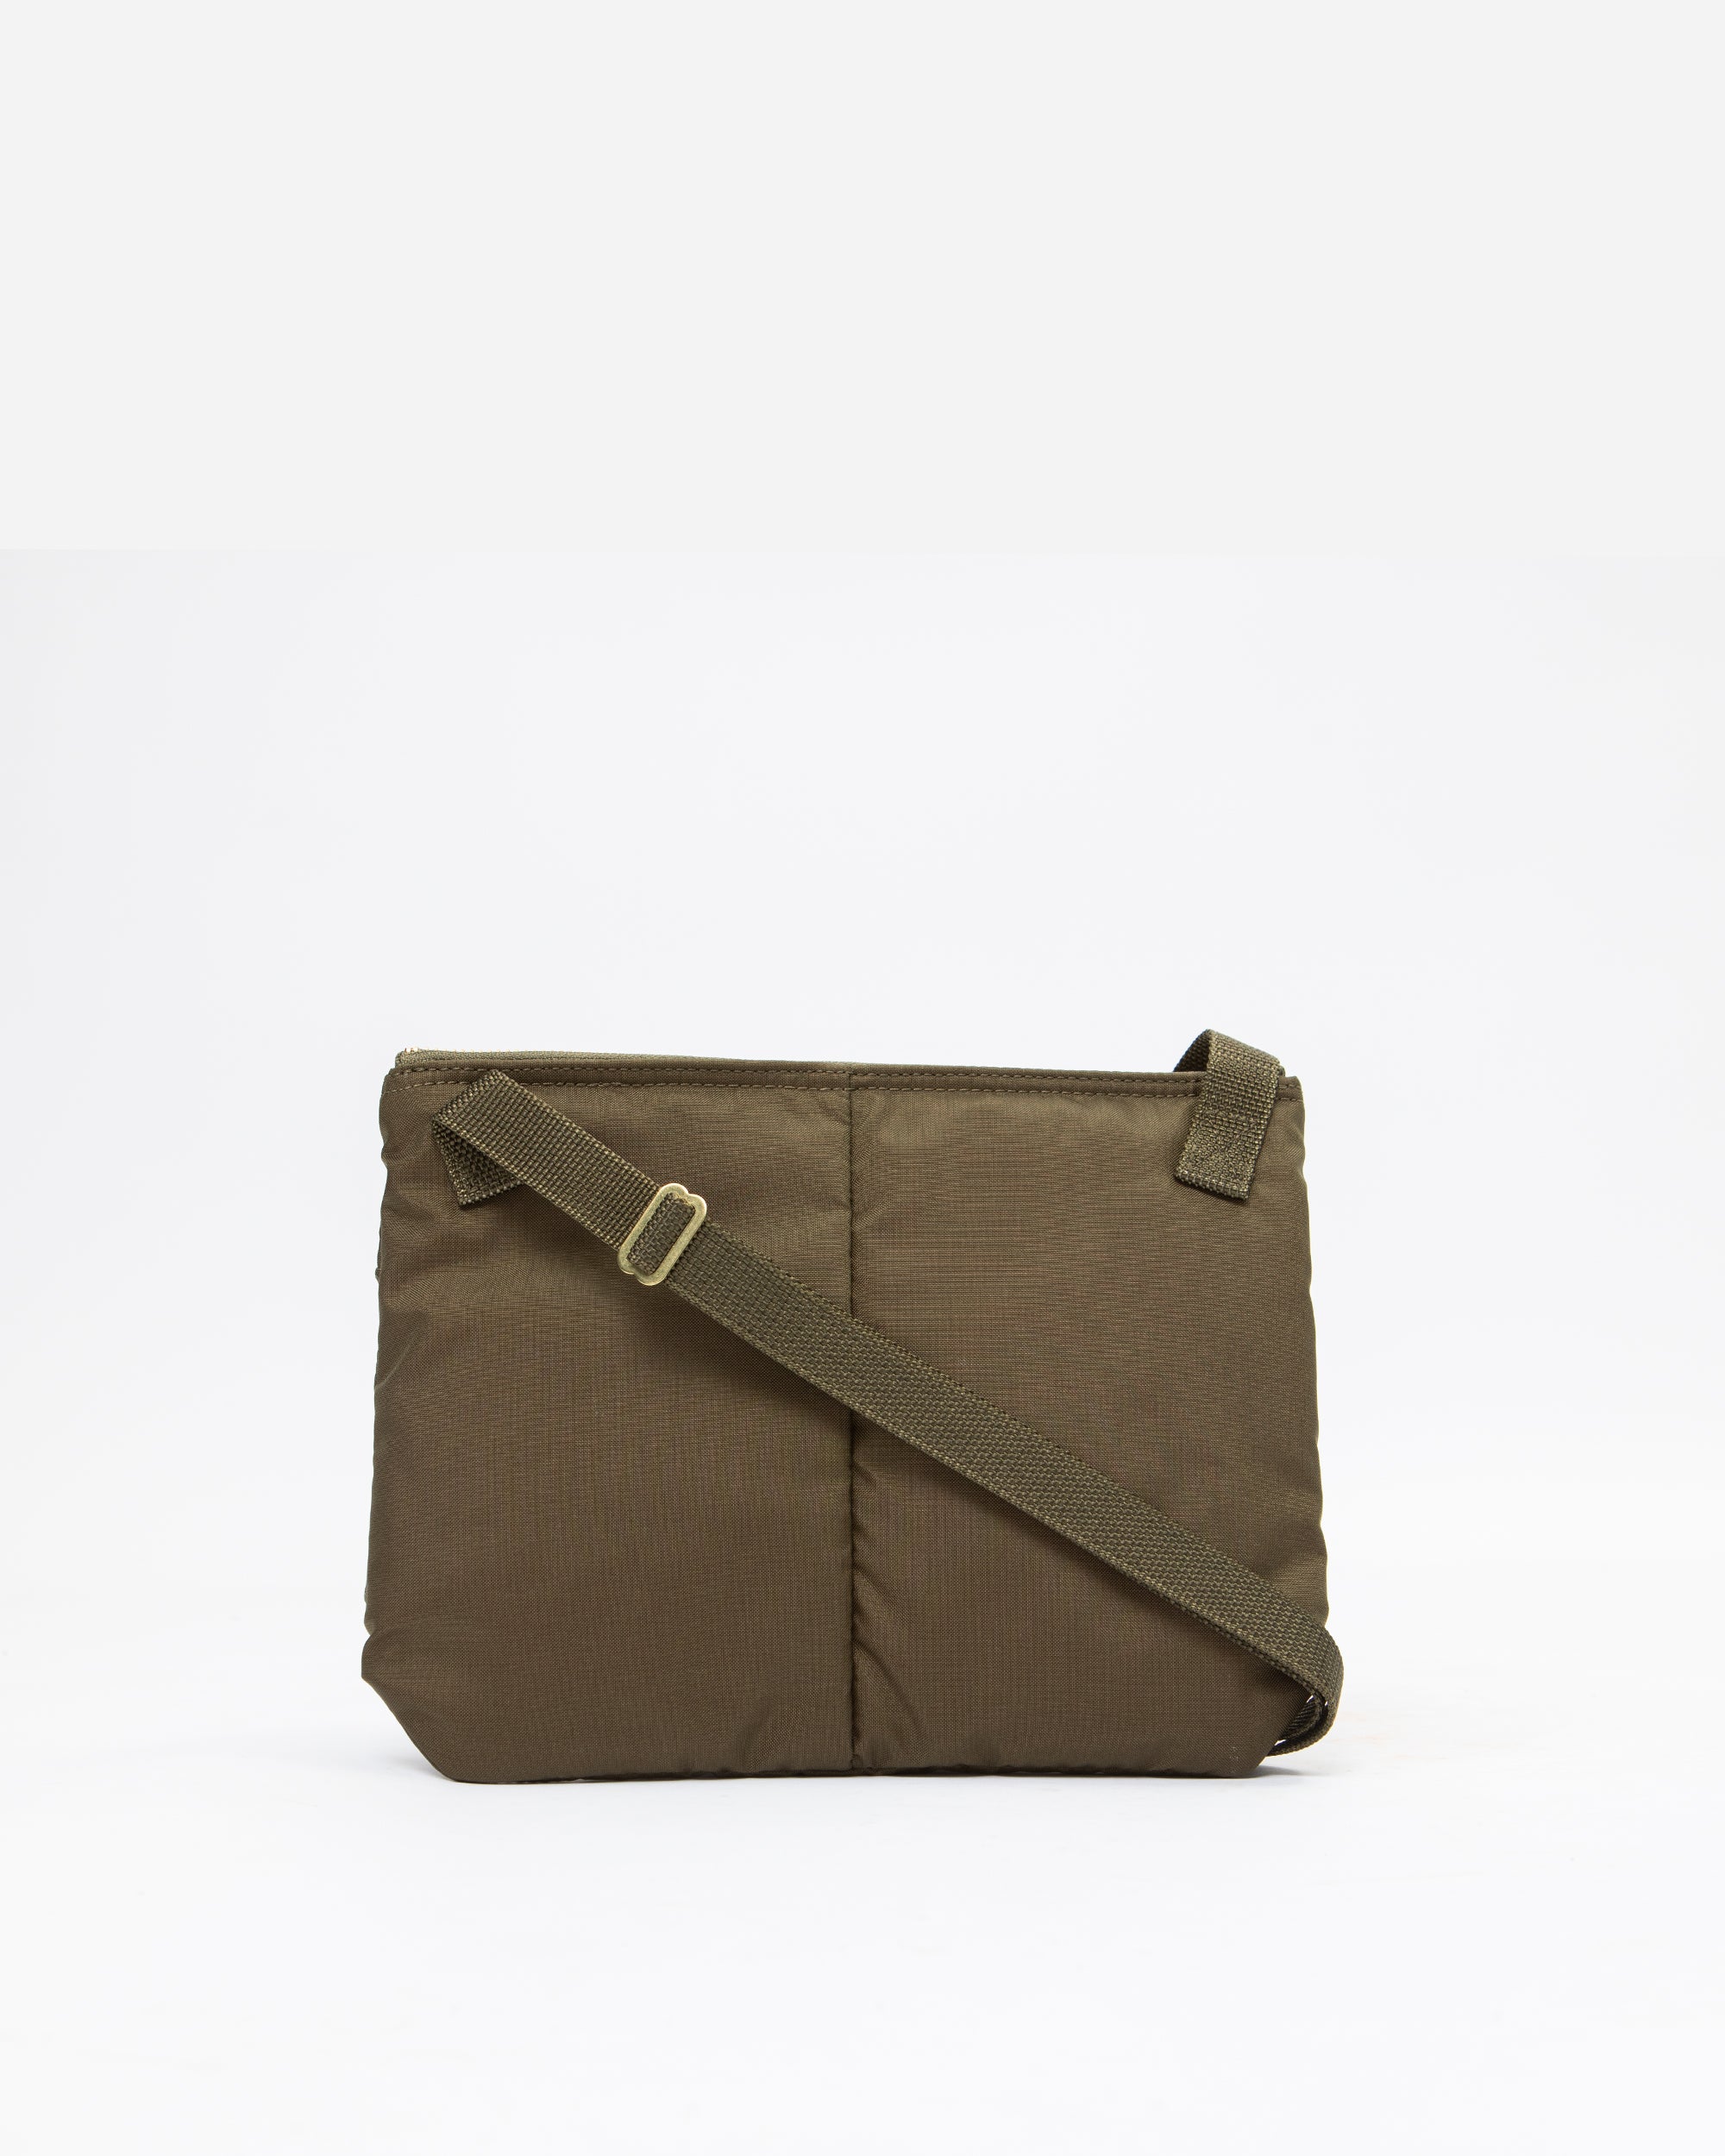 Porter Yoshida & Co Force Shoulder Bag OLIVE DRAB 855-05458-30